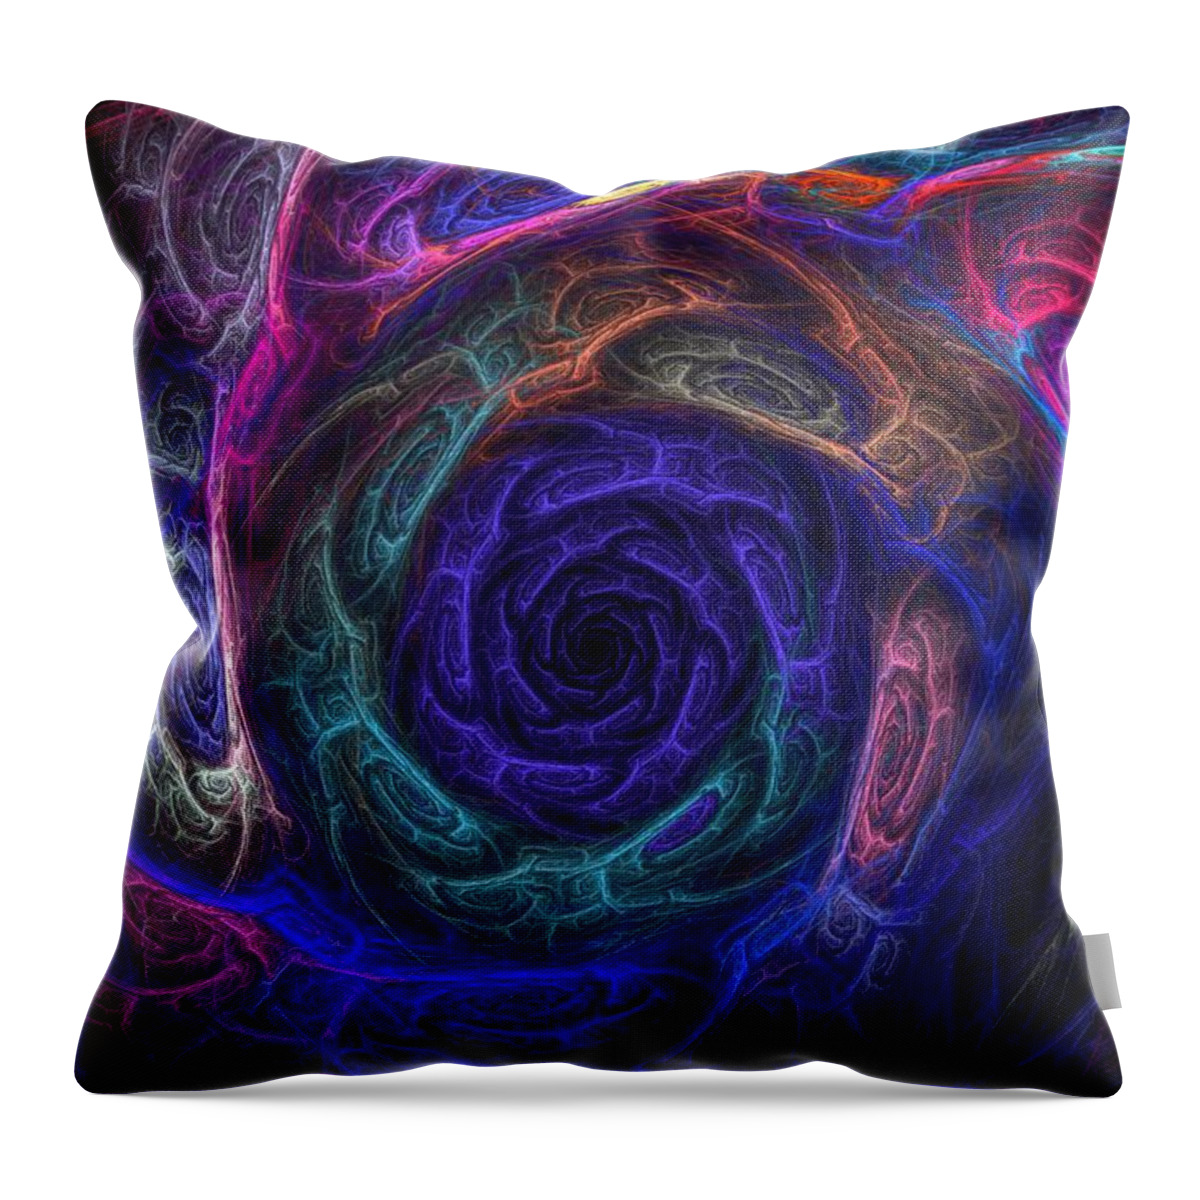 Gaukhar Yerk Throw Pillow featuring the photograph Spiral fractal by Gaukhar Yerk